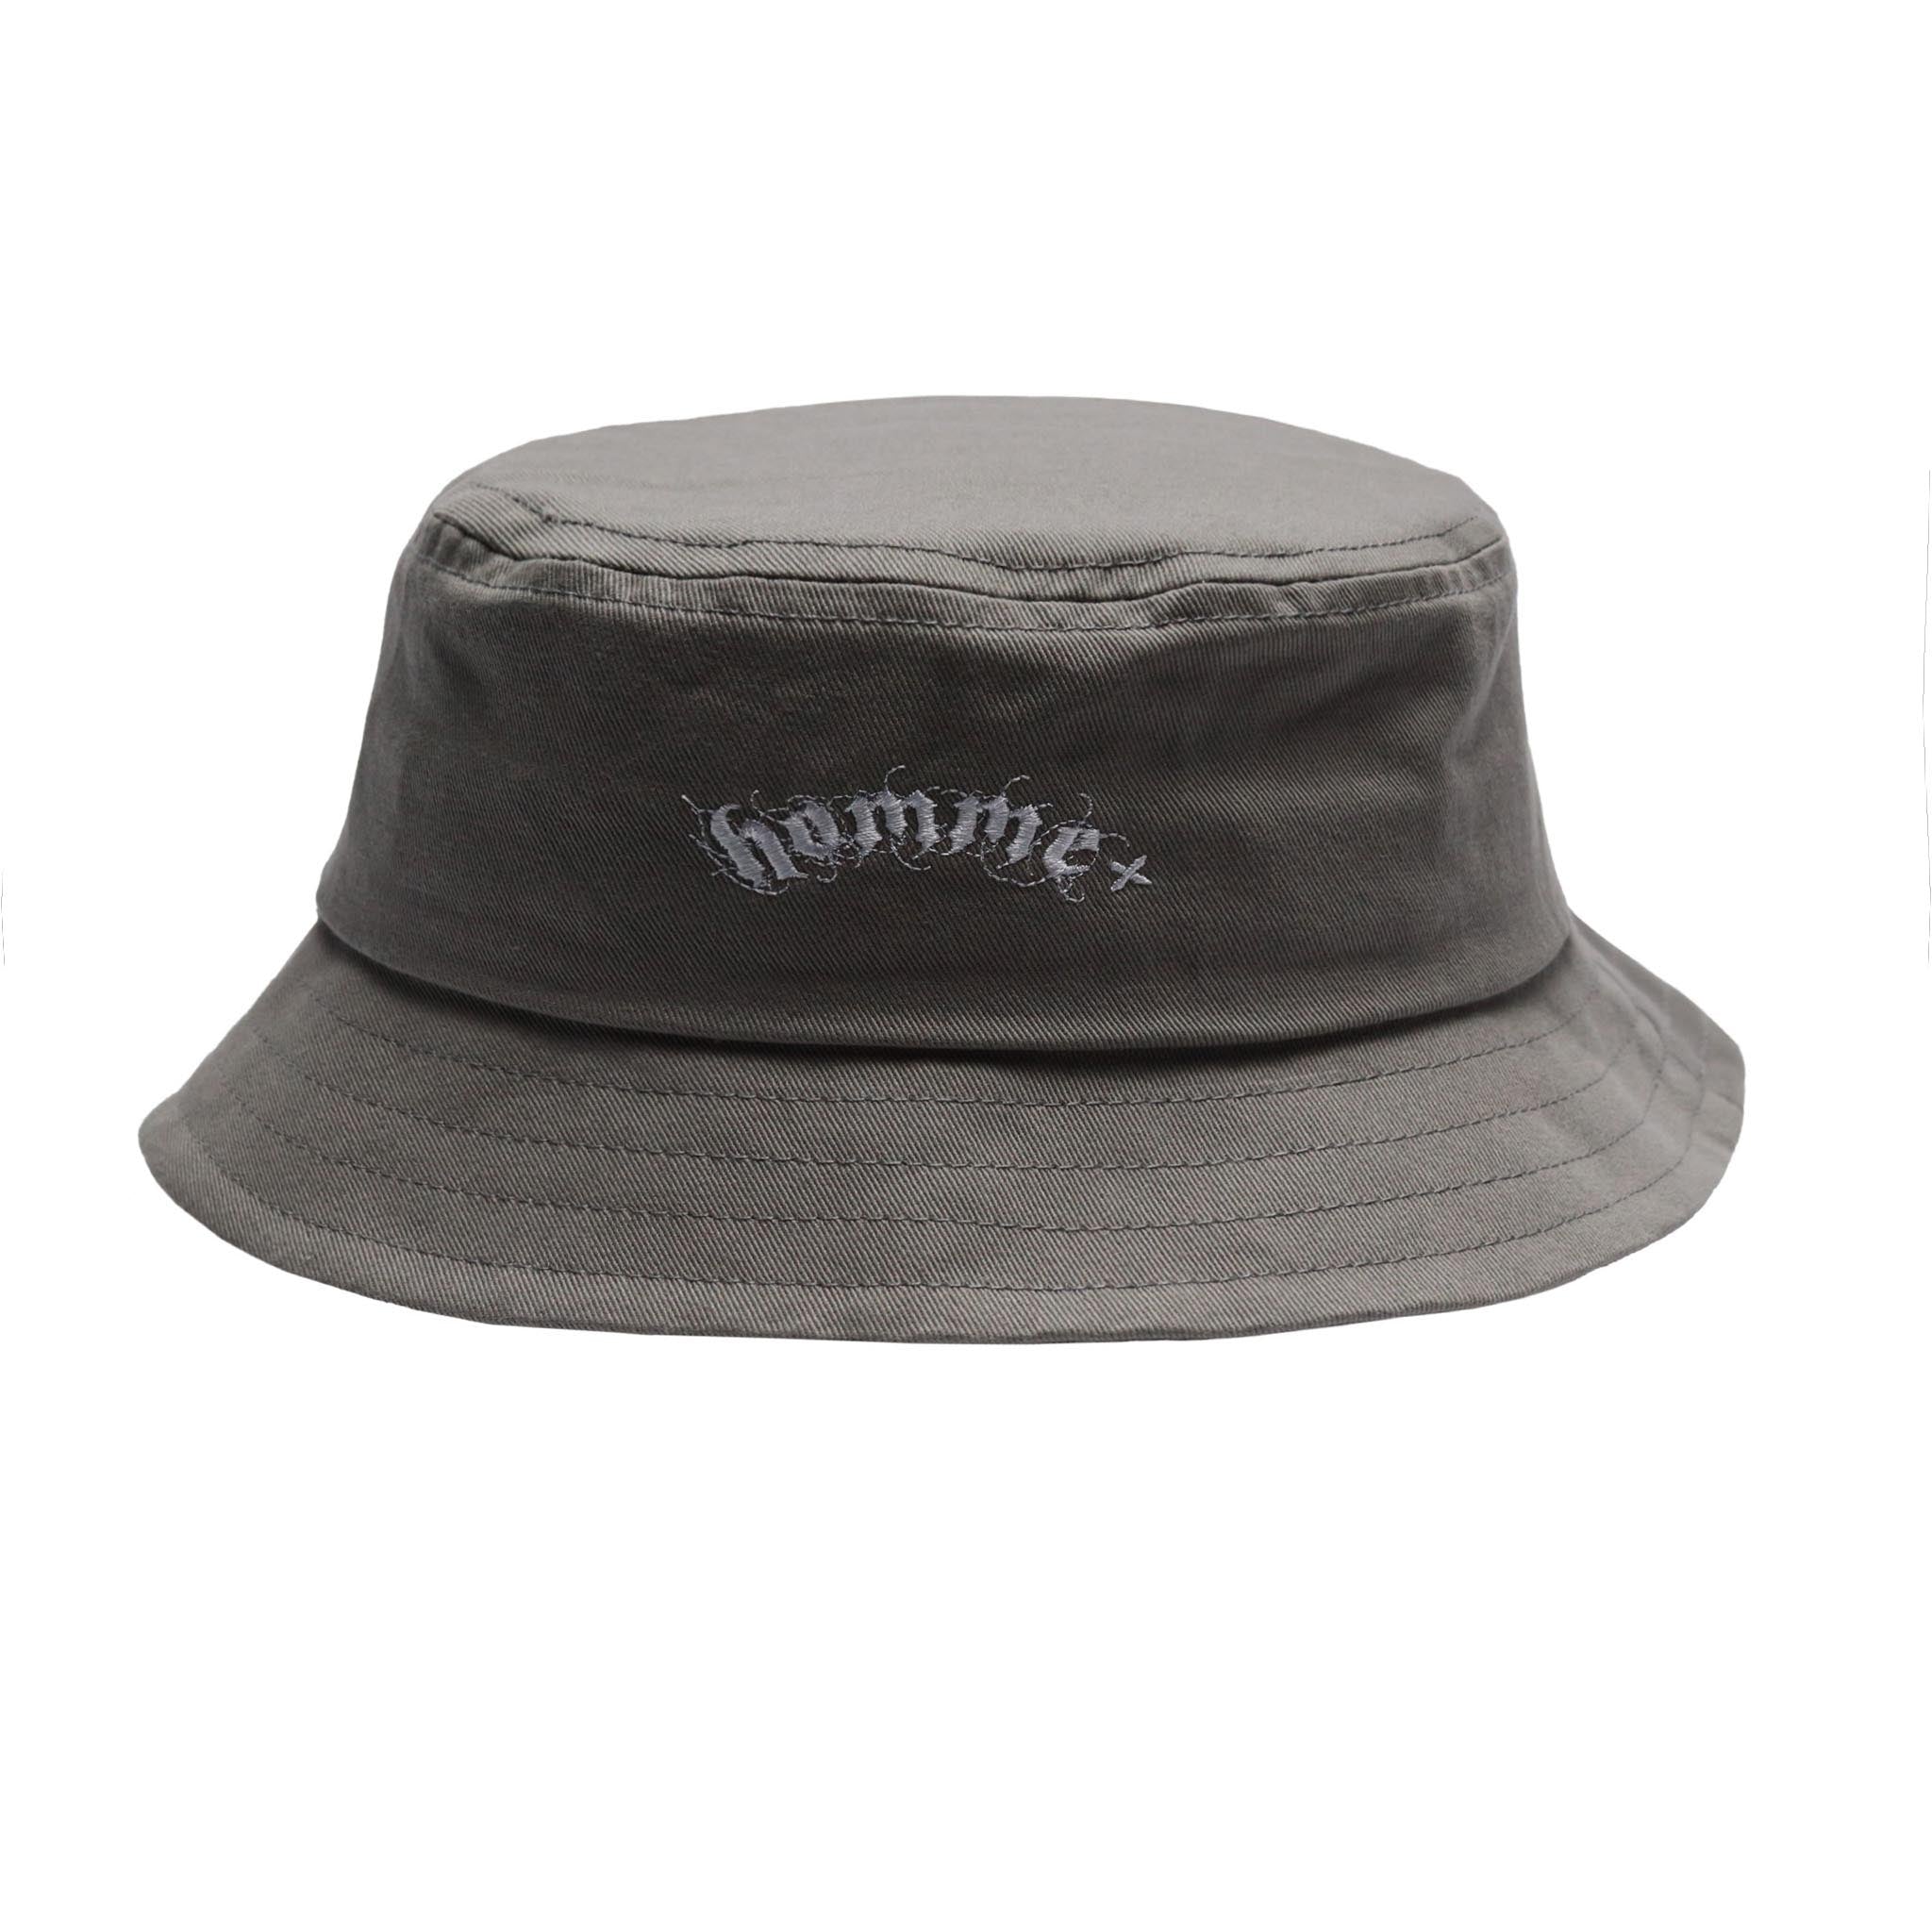 HOMME+ Gothic Print Bucket Hat Grey